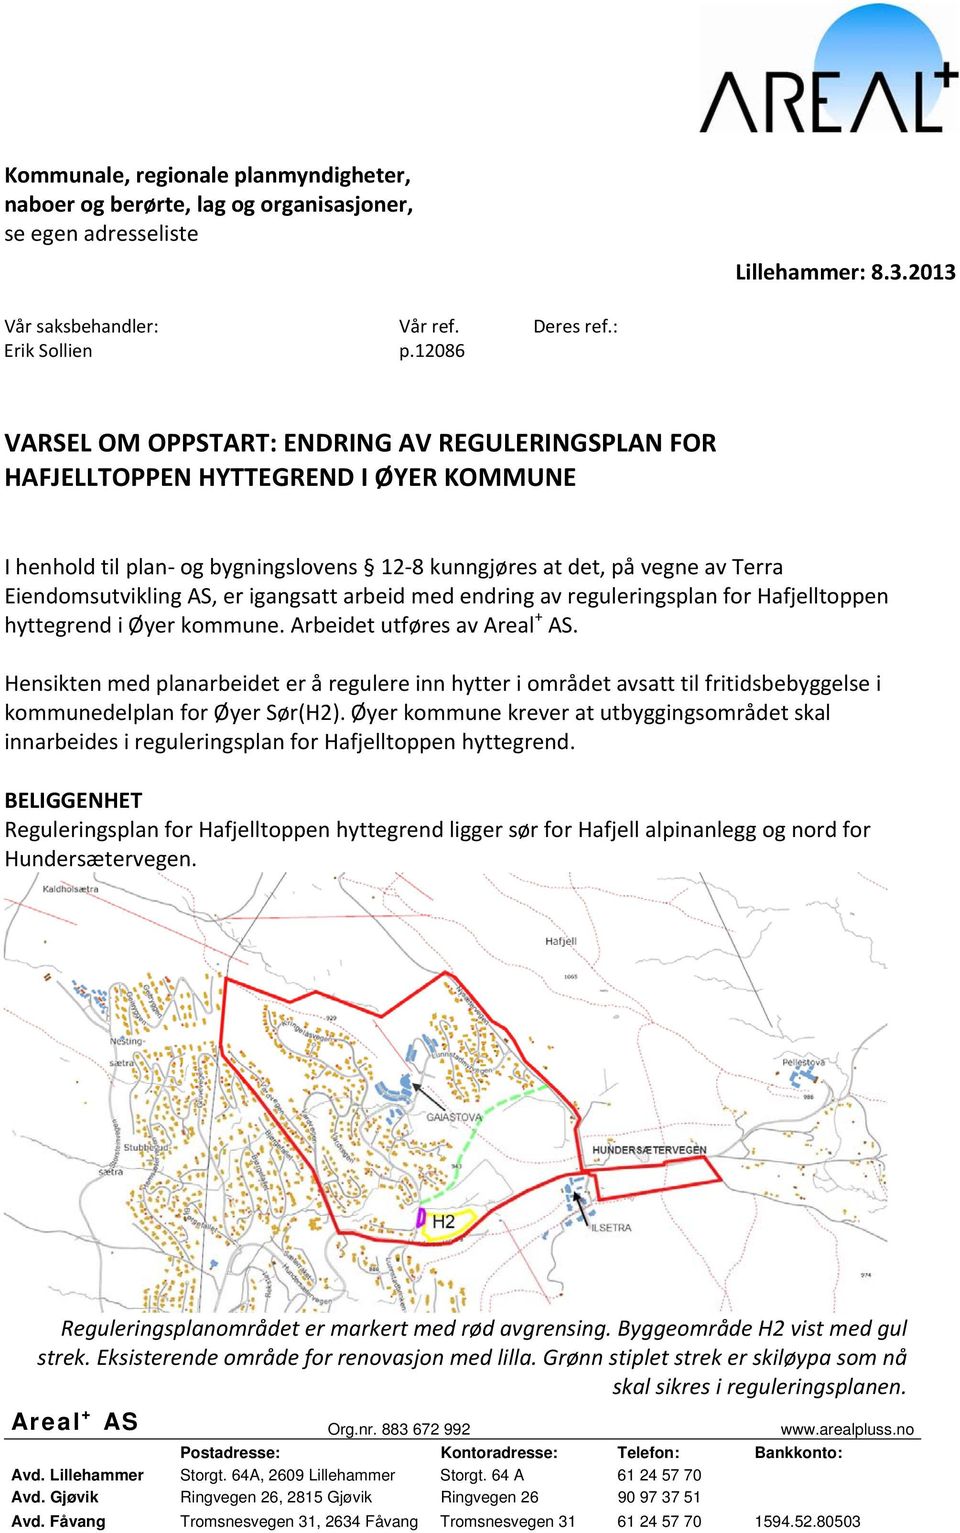 igangsatt arbeid med endring av reguleringsplan for Hafjelltoppen hyttegrend i Øyer kommune. Arbeidet utføres av Areal + AS.